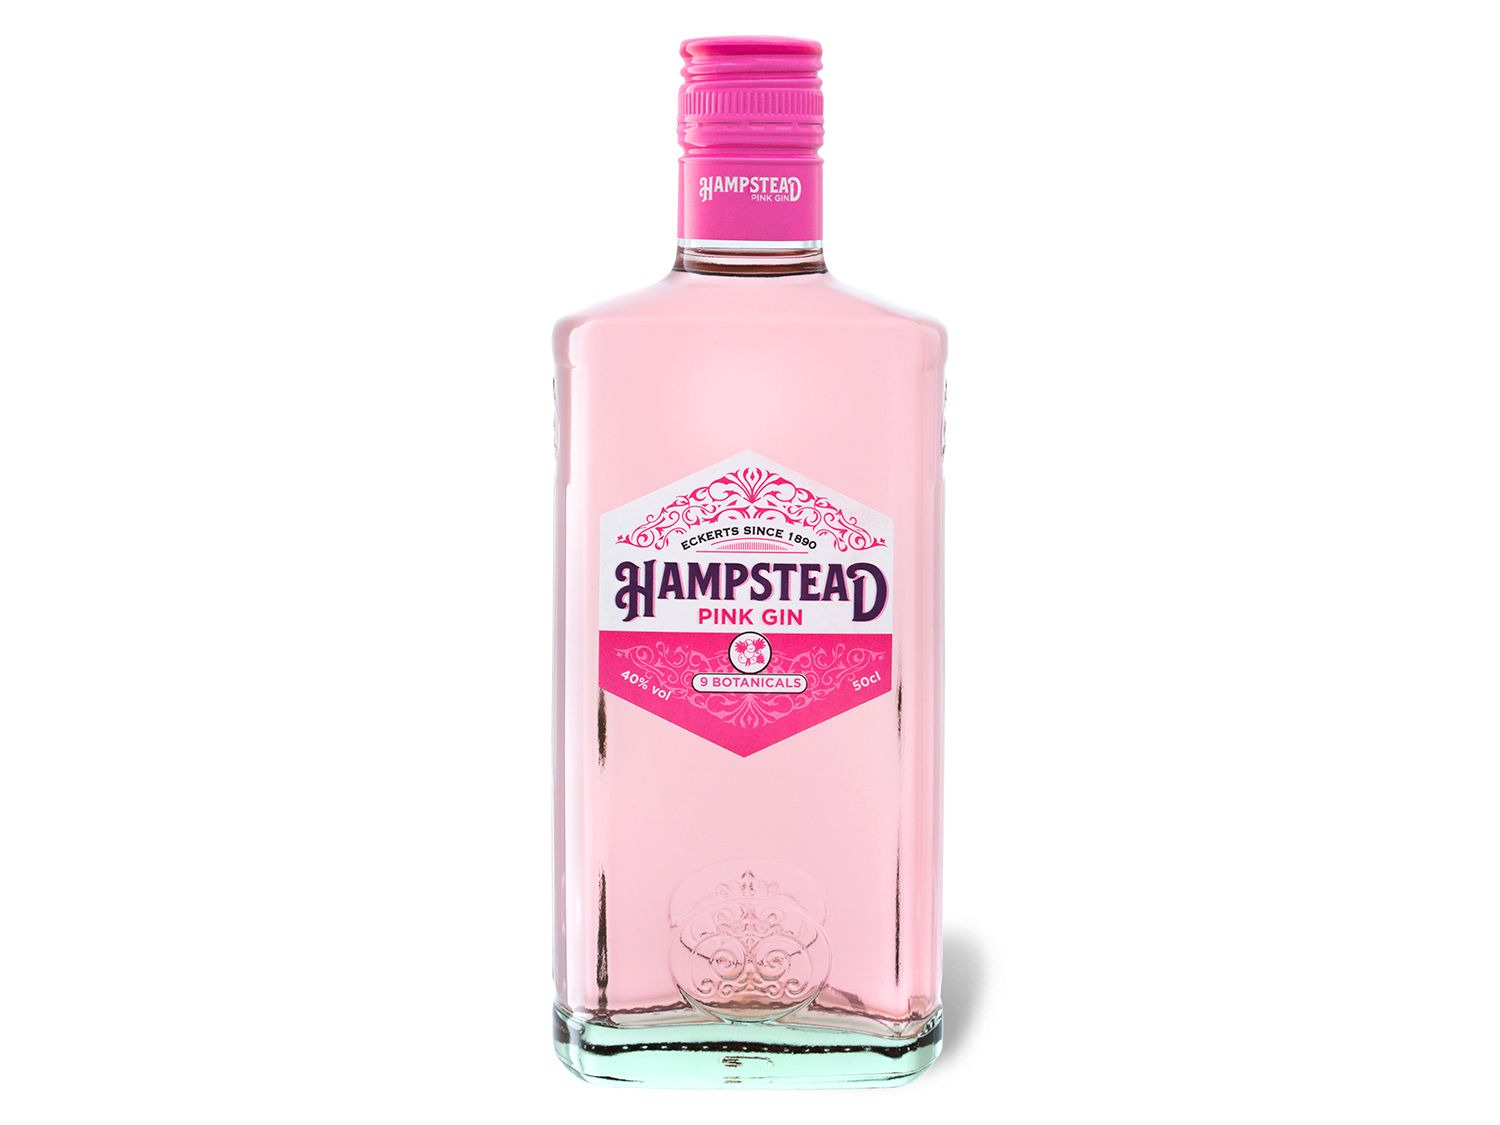 Hampstead Pink Gin 40% online kaufen LIDL Vol 